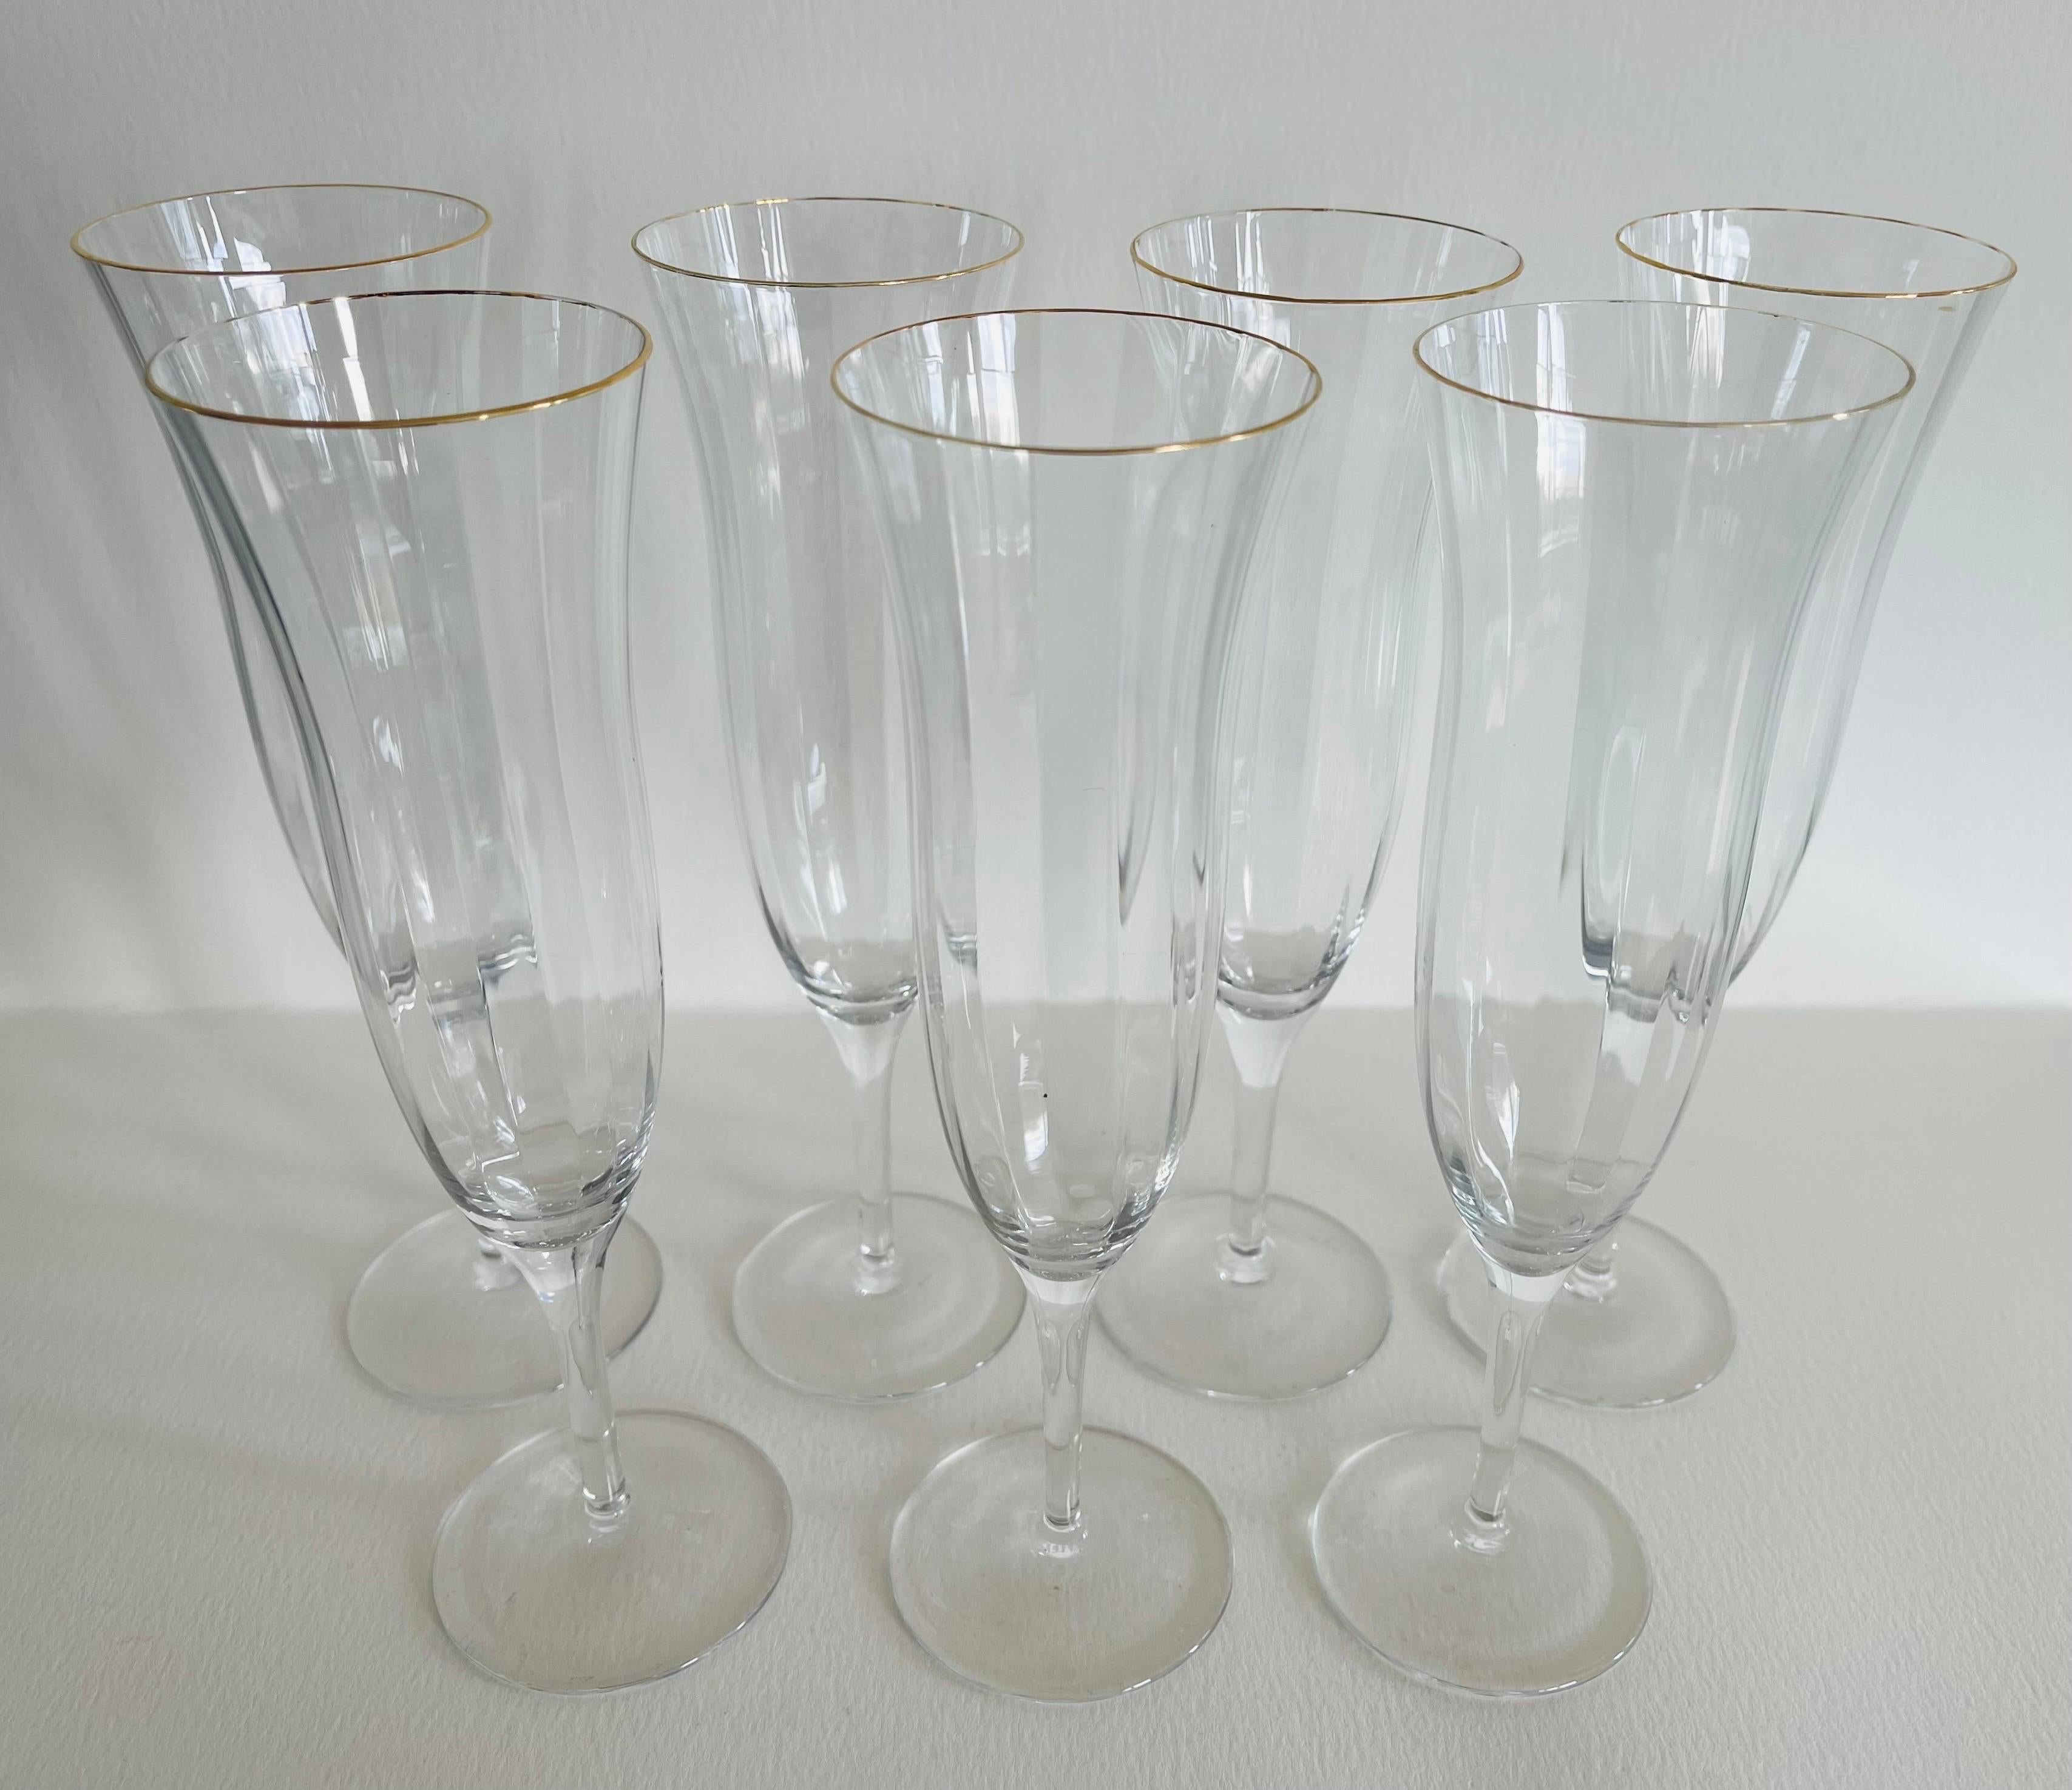 Vintage set of seven gold rim champagne glass flutes. Marked Gorham.